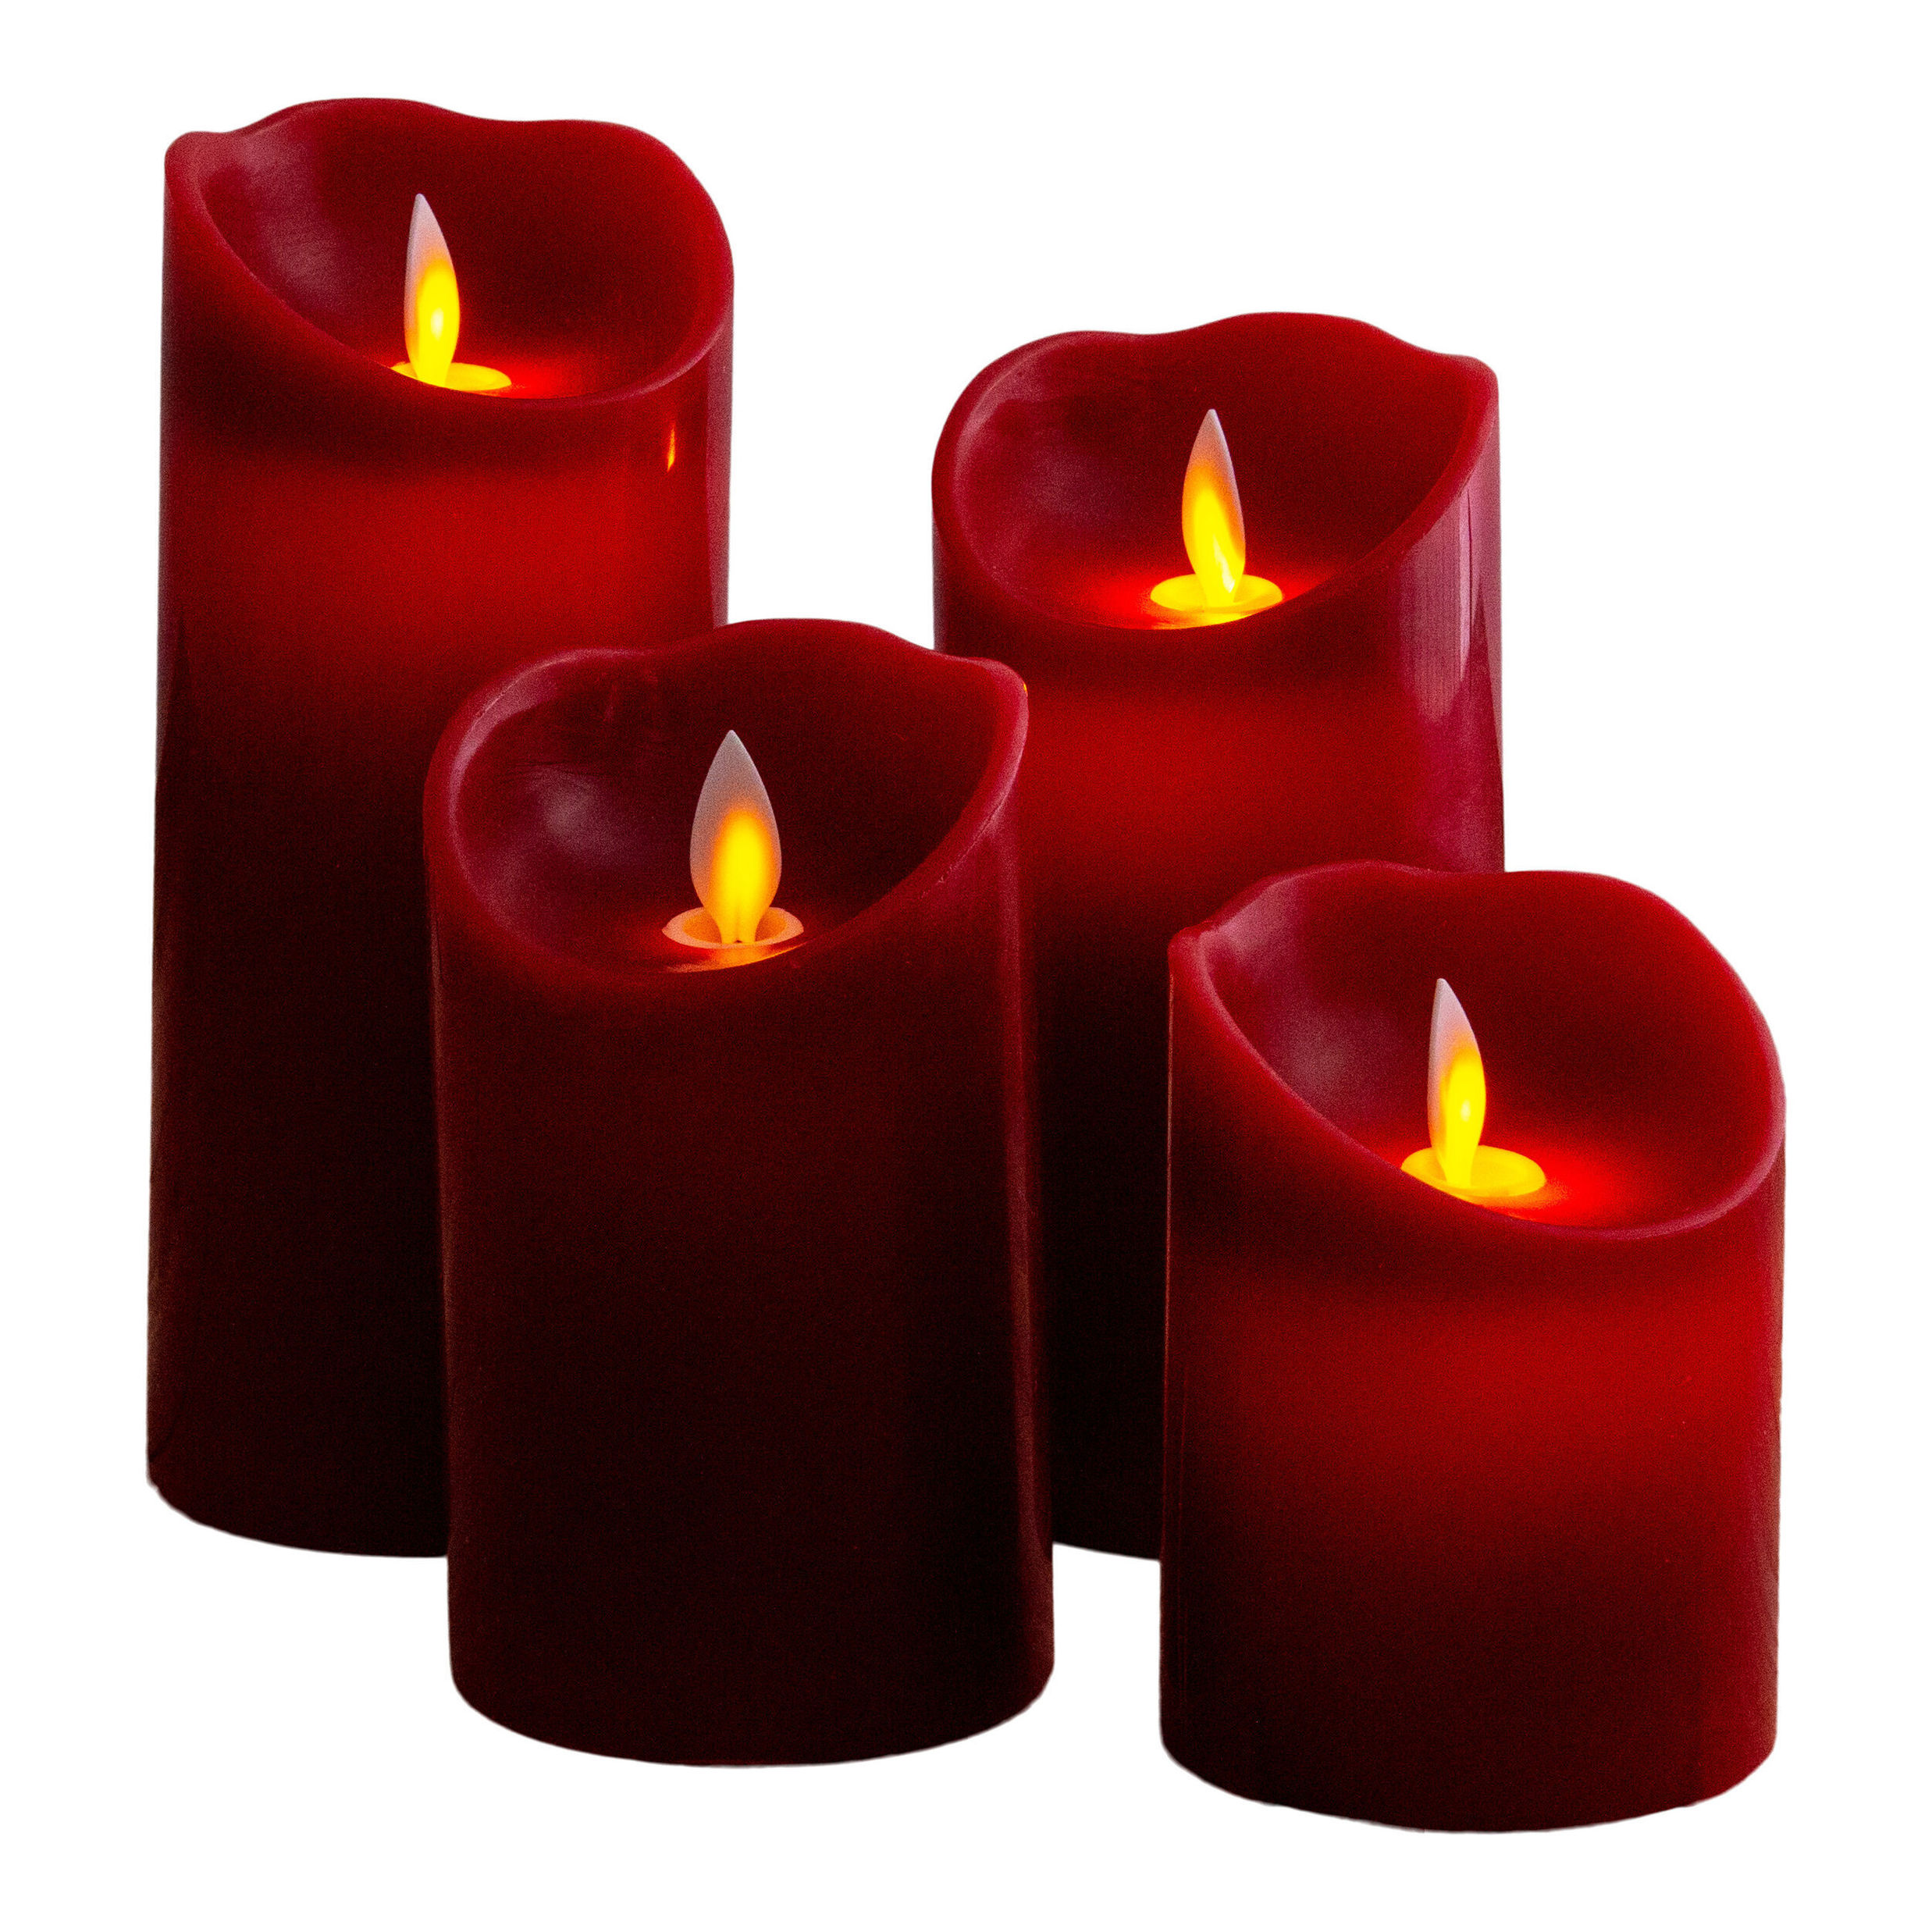 Näve Leuchten 4er-Set LED-Kerzen Farbe: rot